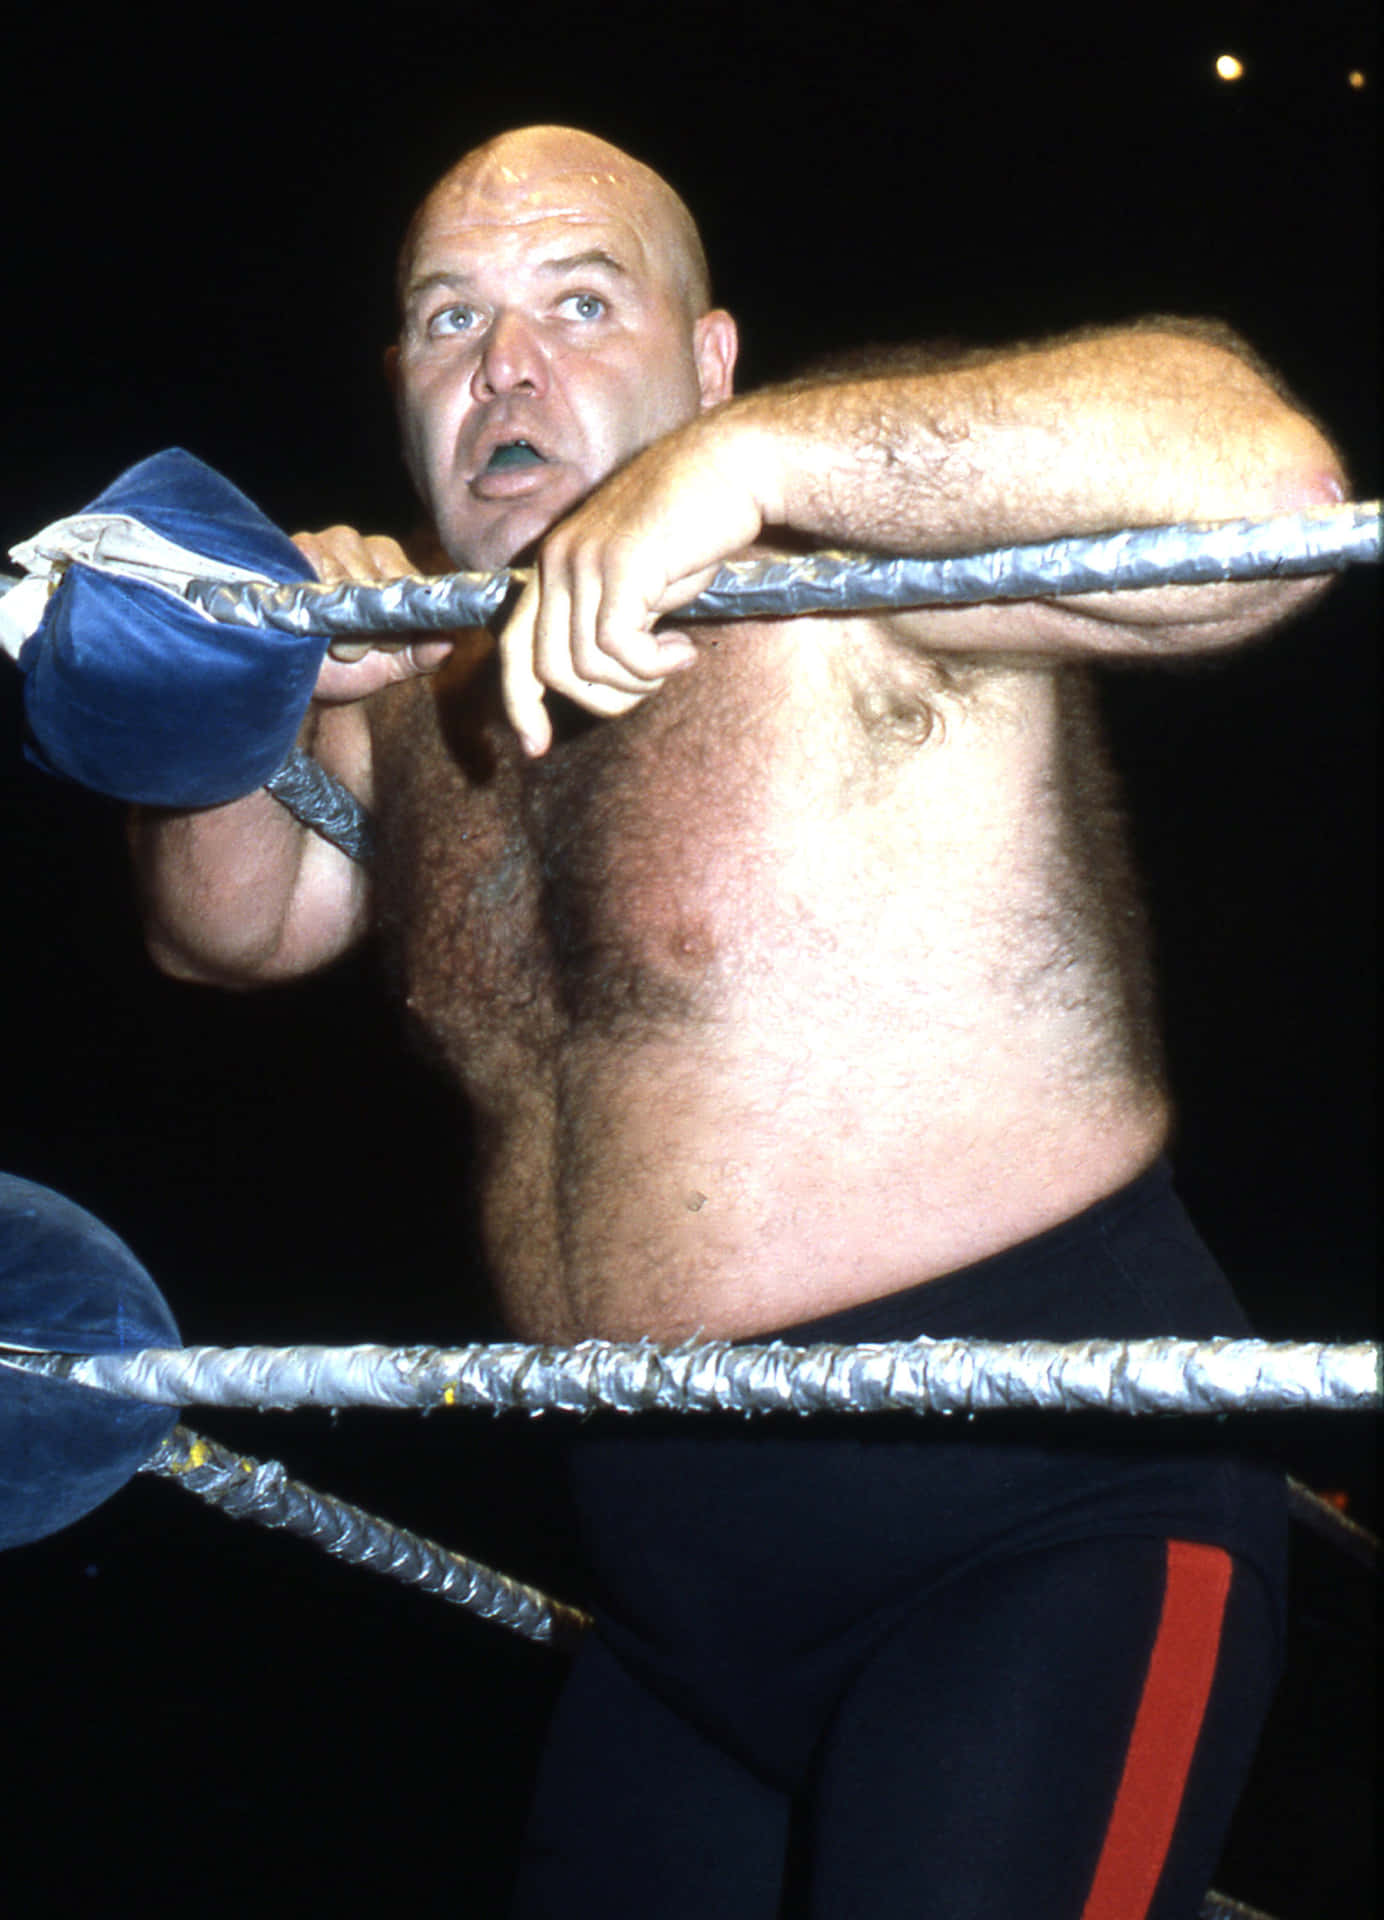 Leggendariolottatore George Steele Appoggiato Sul Ring Di Wrestling. Sfondo